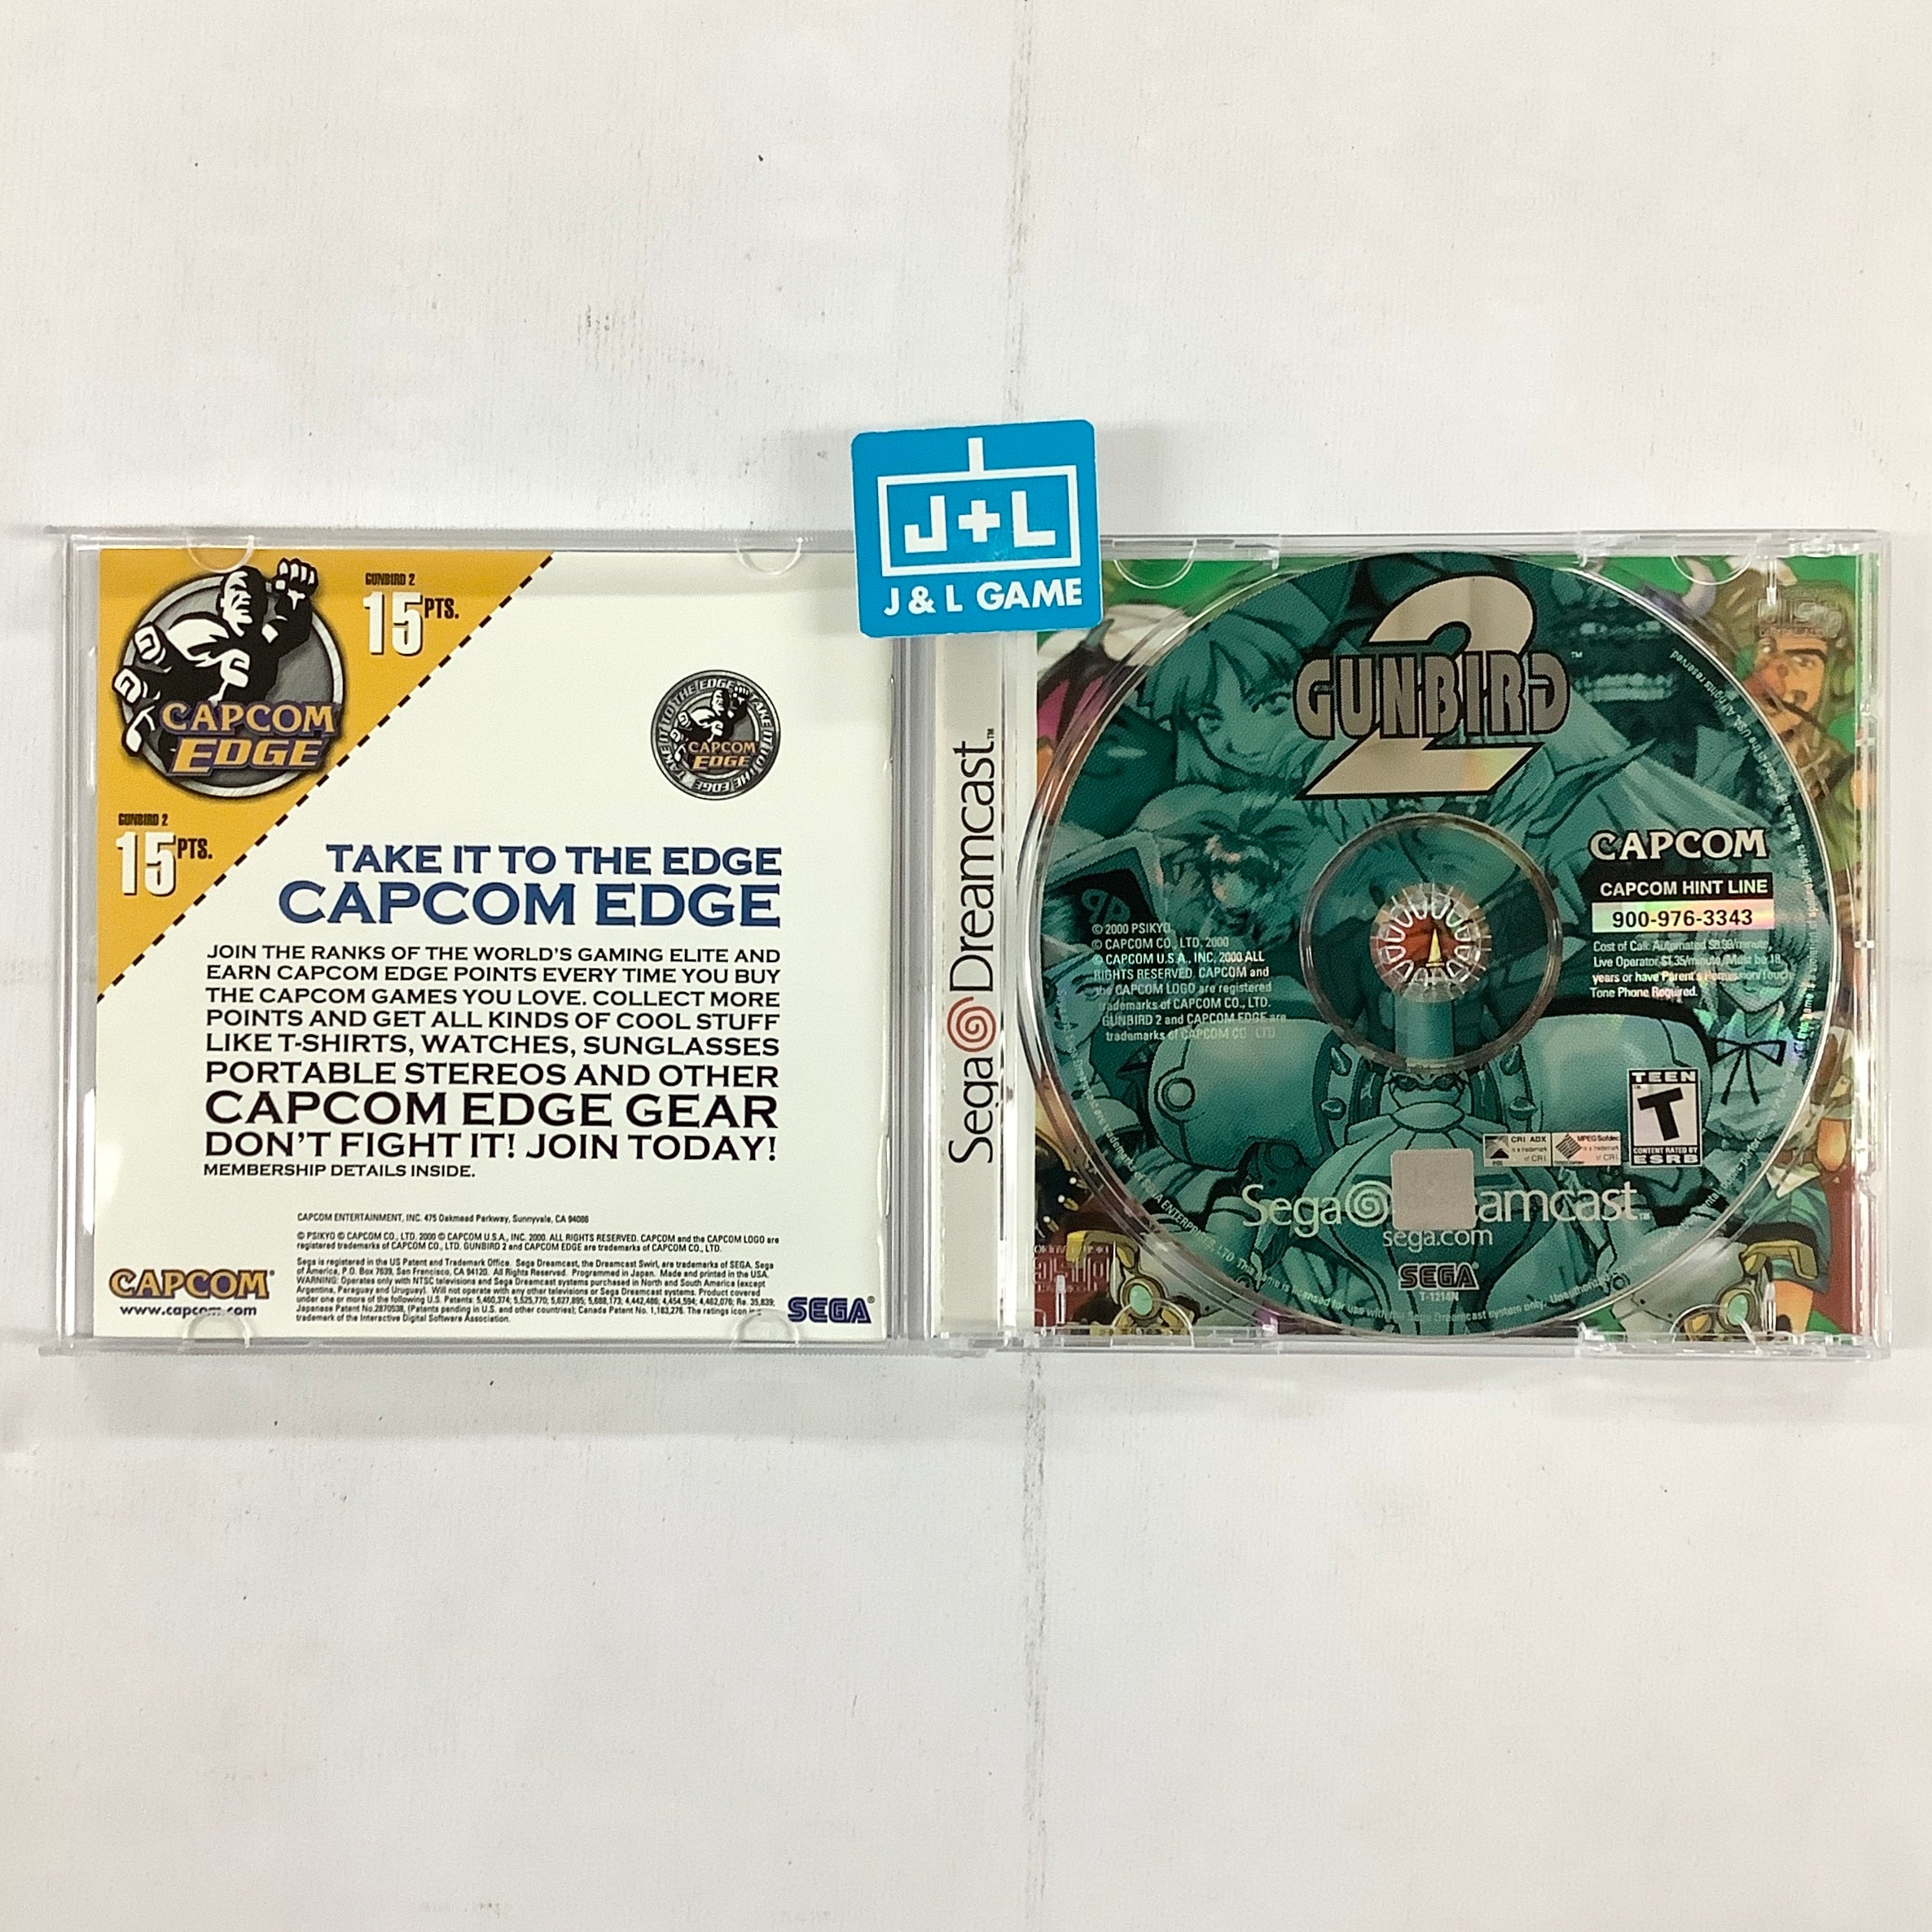 Gunbird 2 - (DC) SEGA Dreamcast  [Pre-Owned] Video Games Capcom   